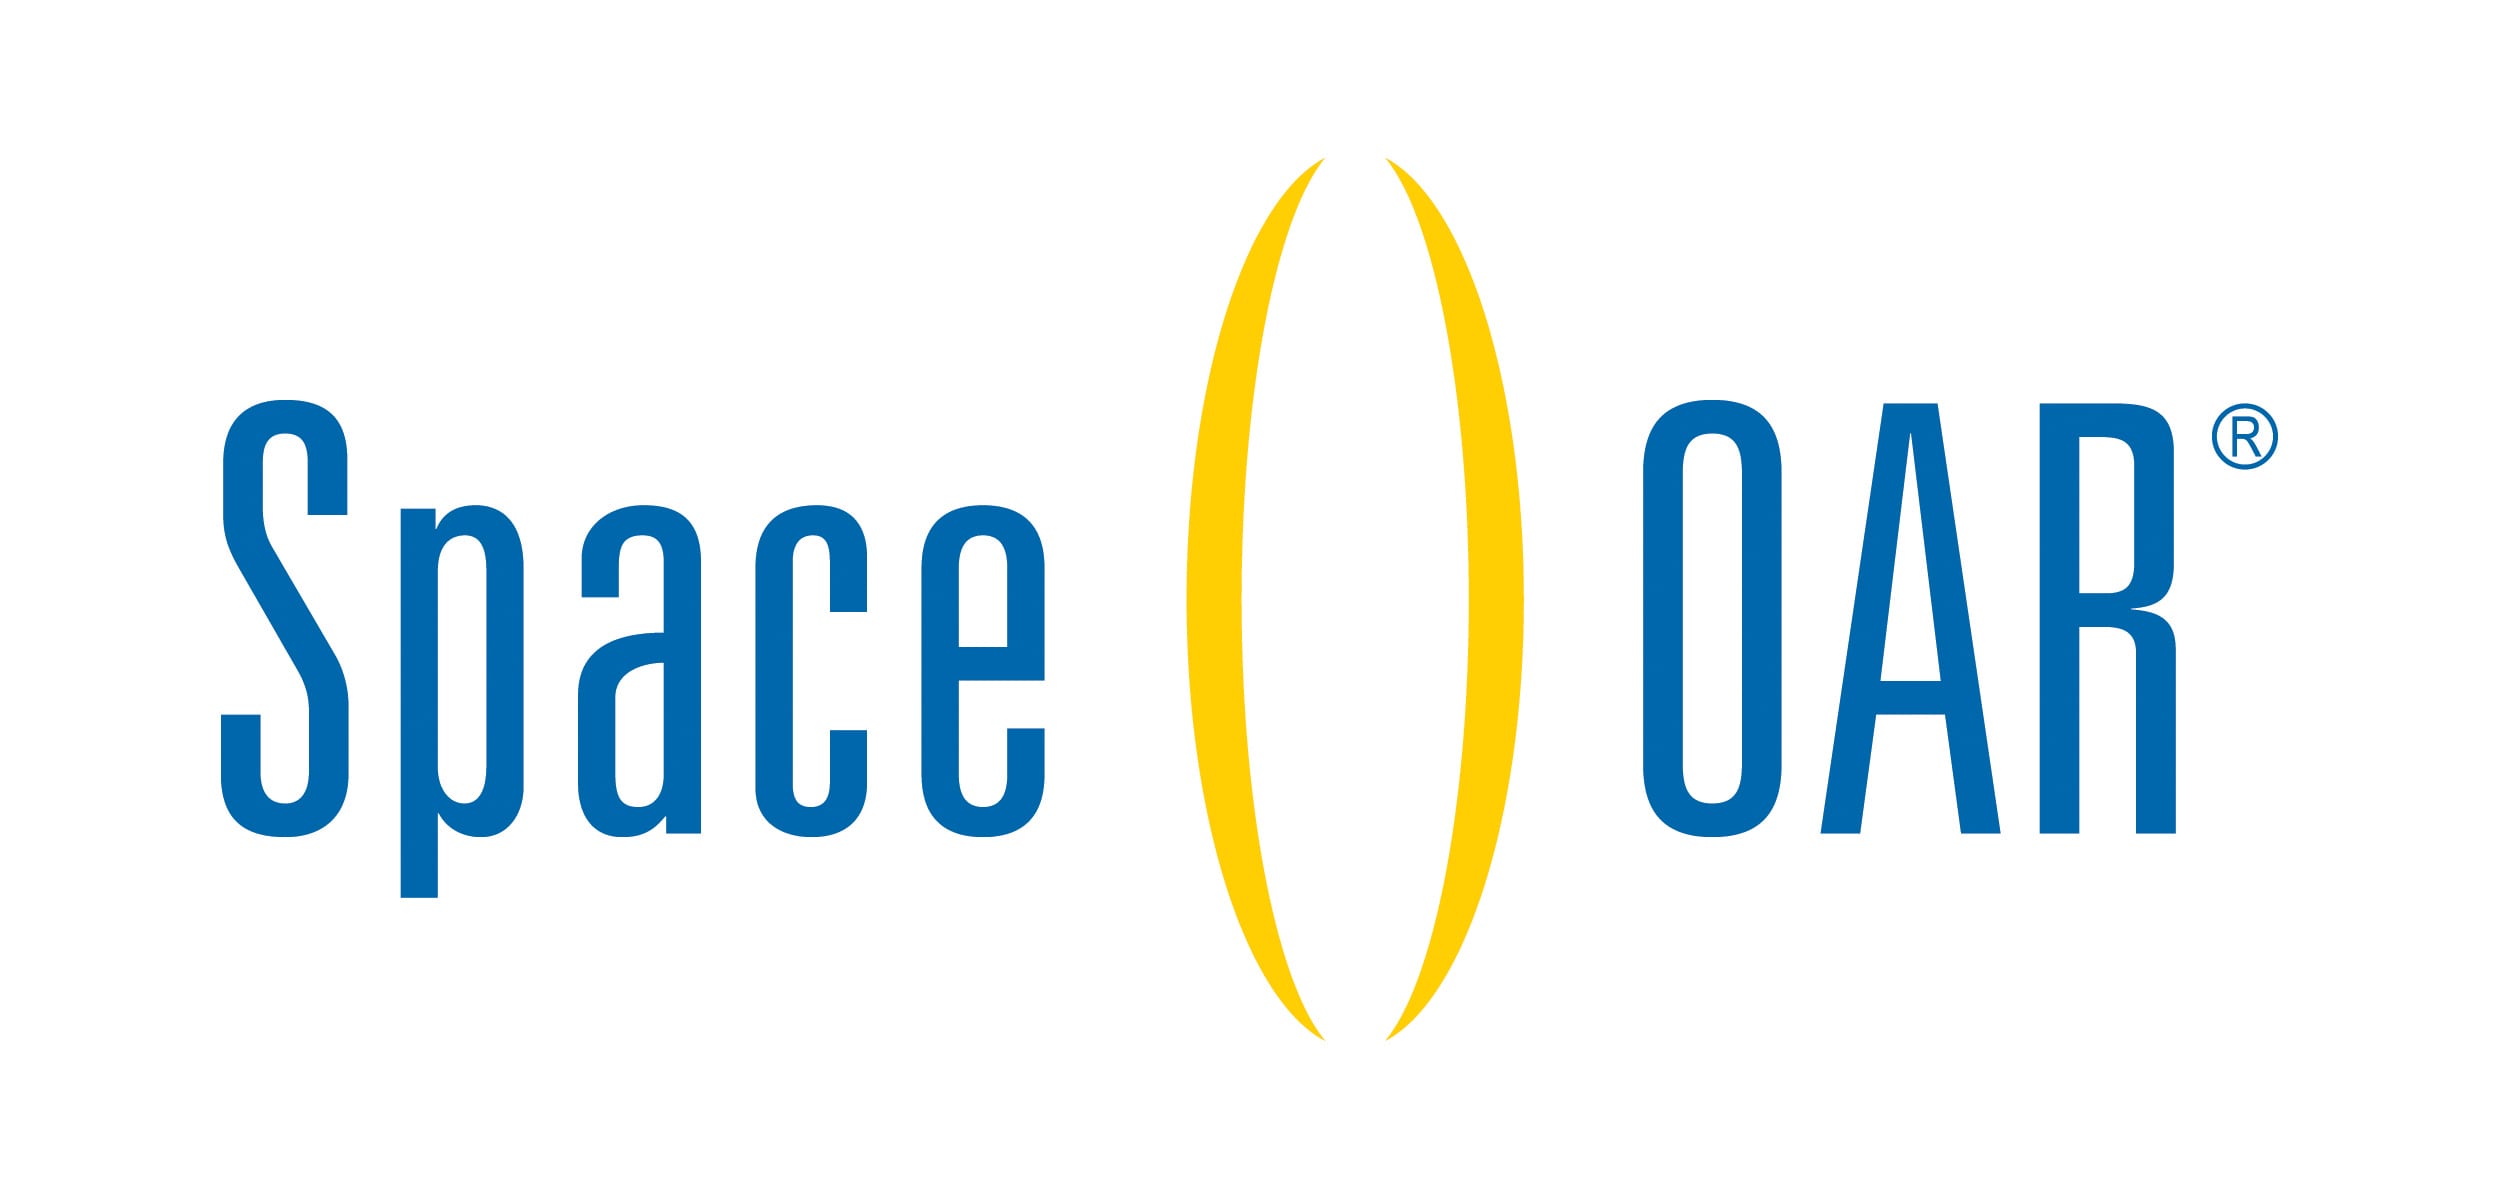 Space Oar